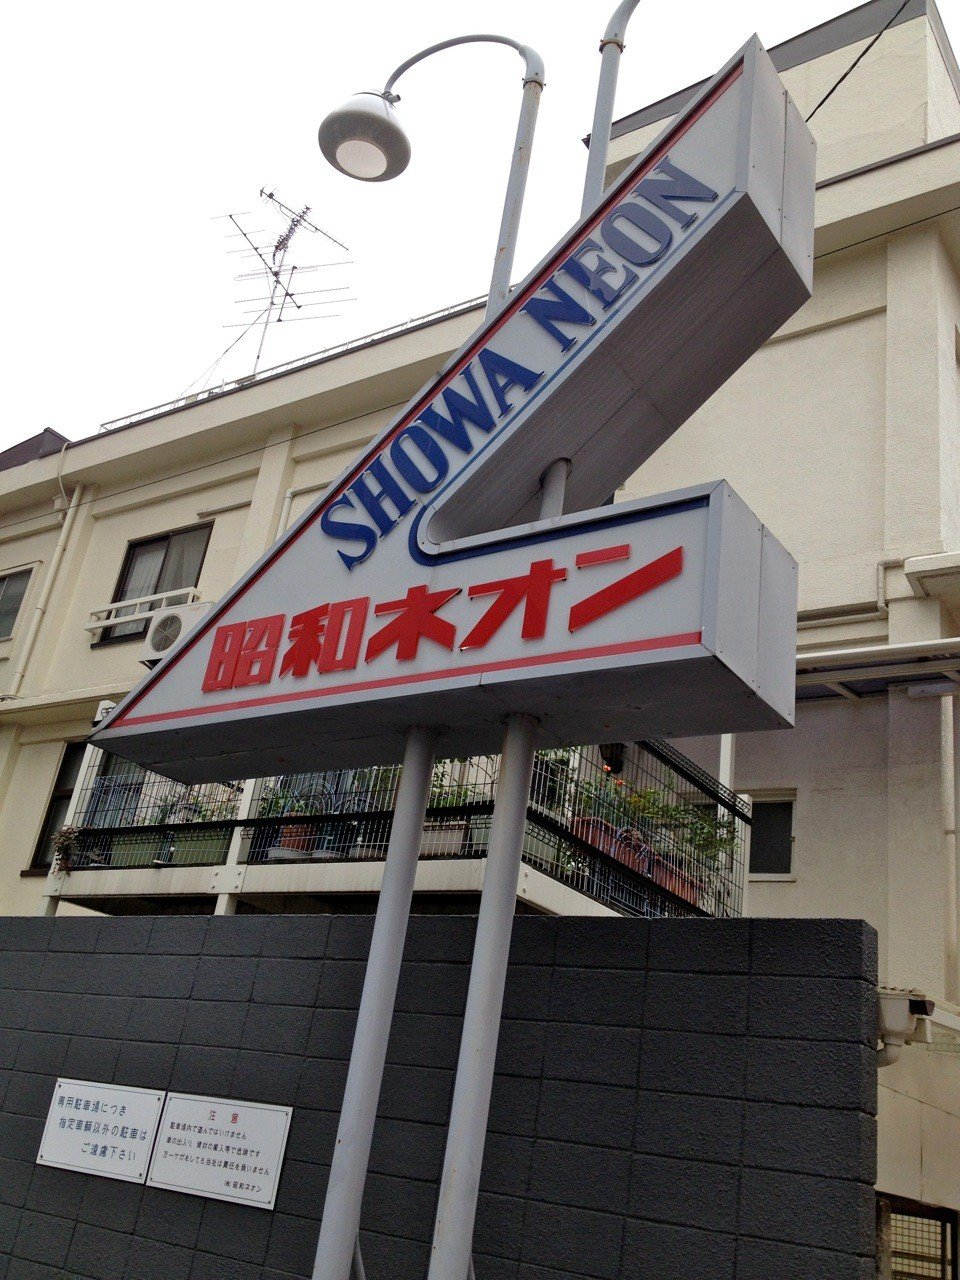 Biển hiệu Showa Neon ở tòa nhà bên cạnh không hề cho biết bên trong có gì